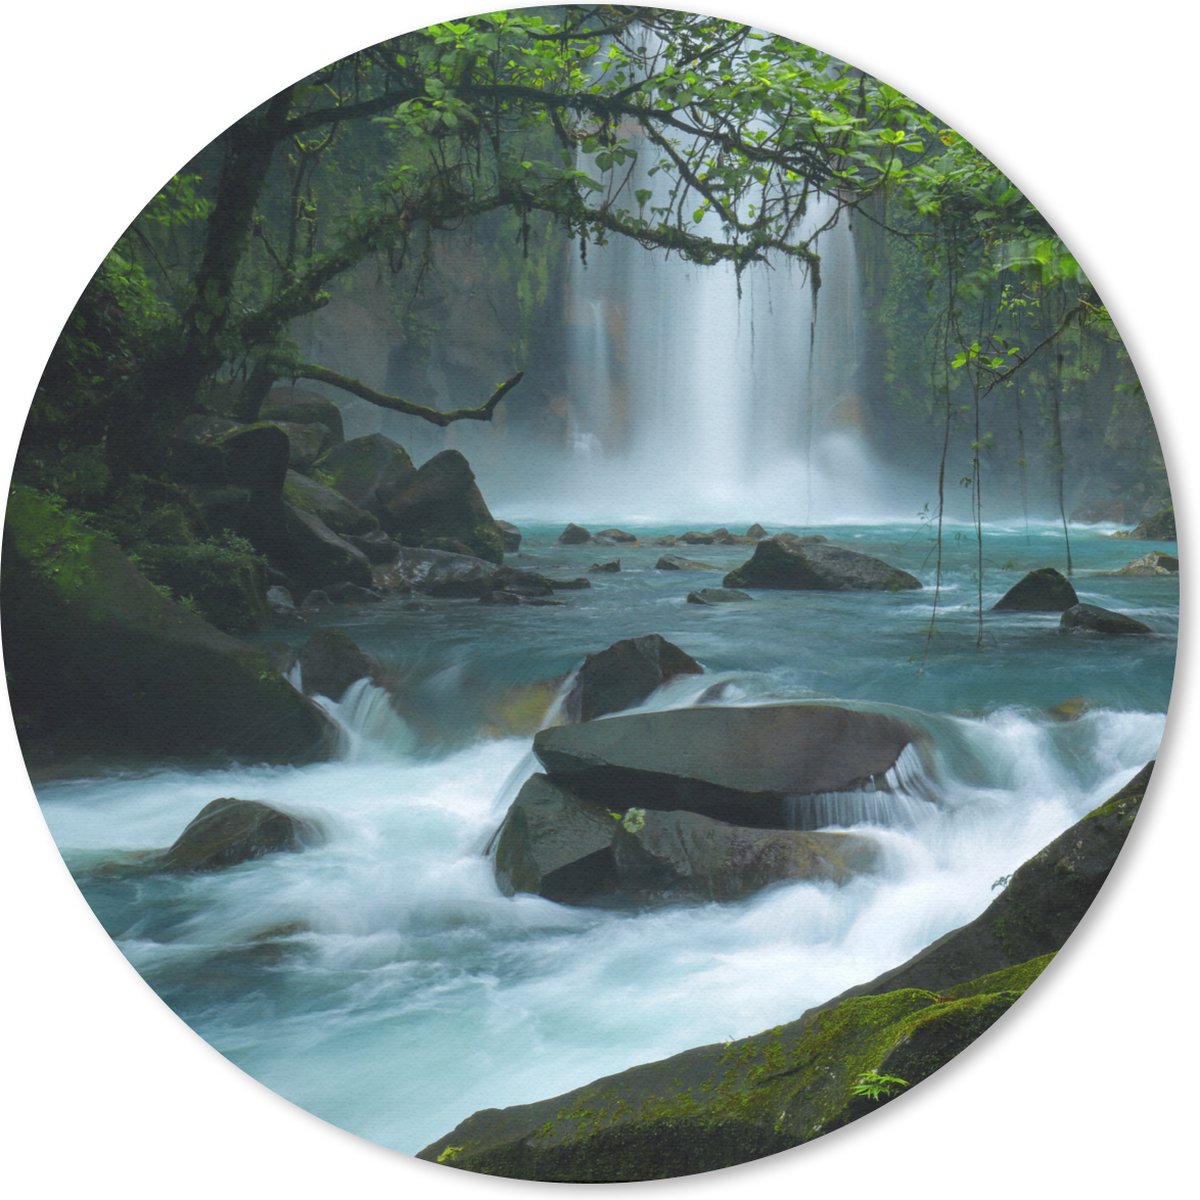 Muismat - Mousepad - Rond - Helderblauwe wilde rivier en watervallen in het regenwoud van Costa Rica - 40x40 cm - Ronde muismat